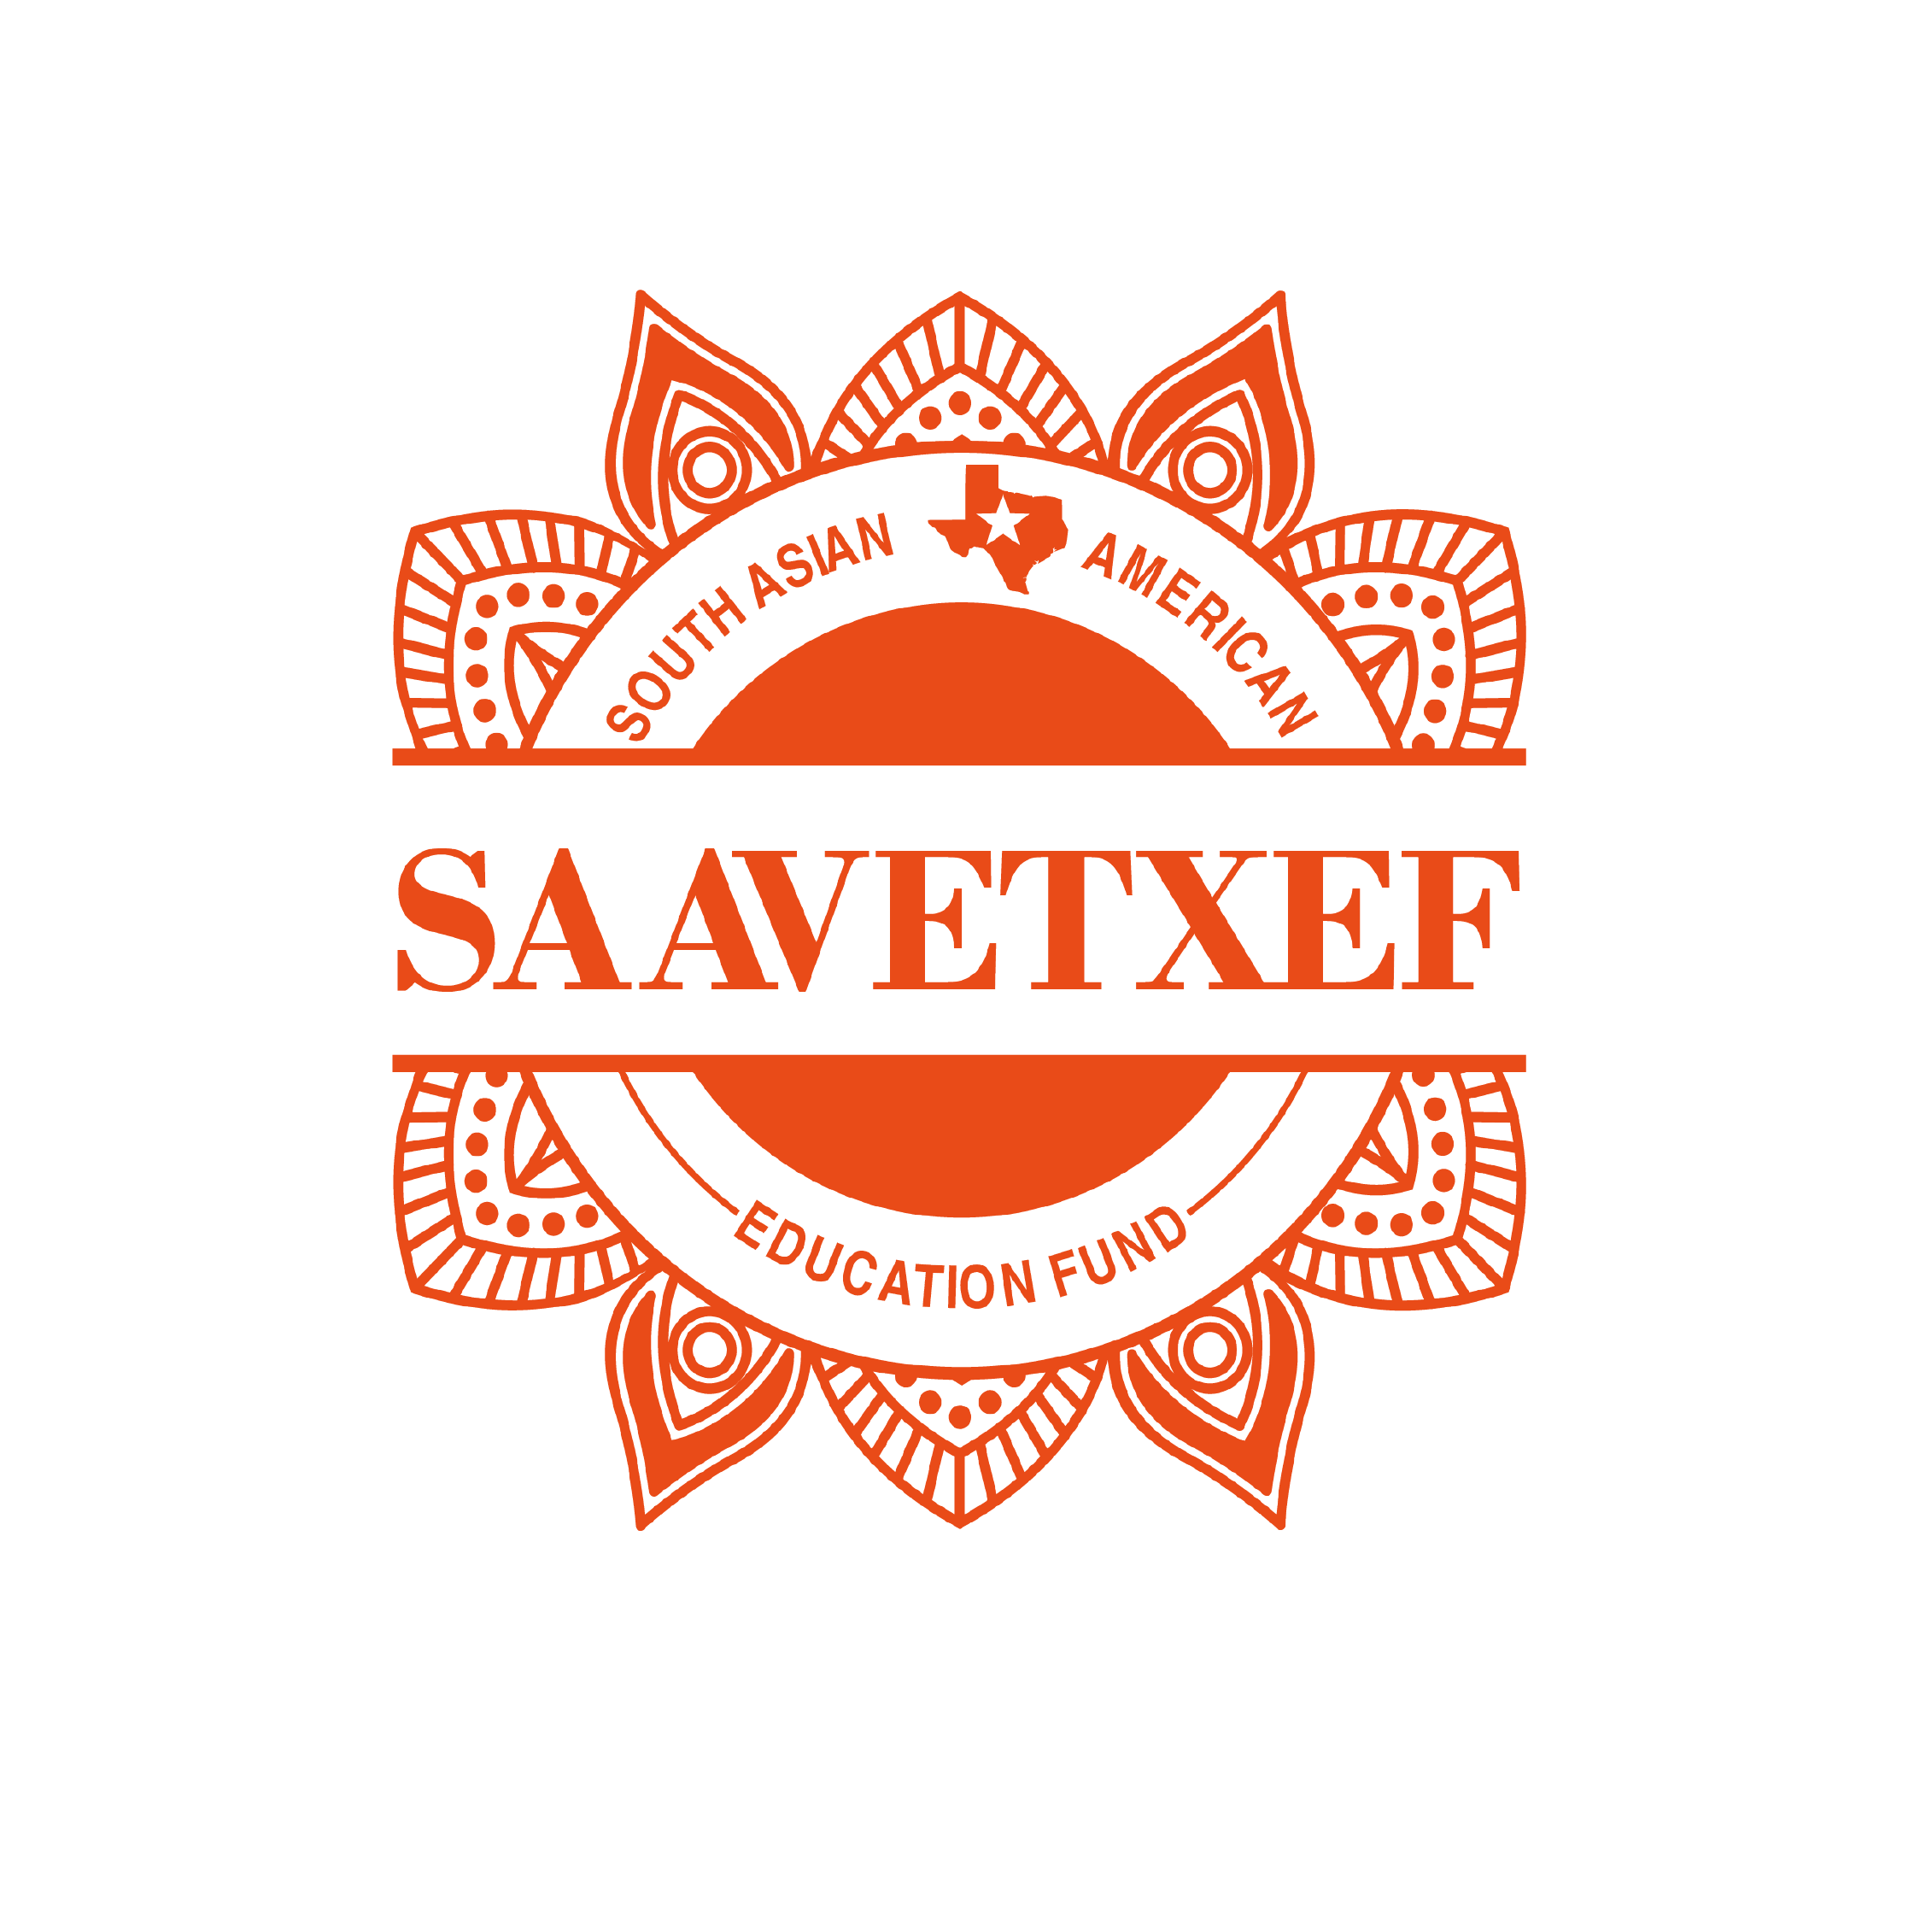 SAAVETXEF-13.png